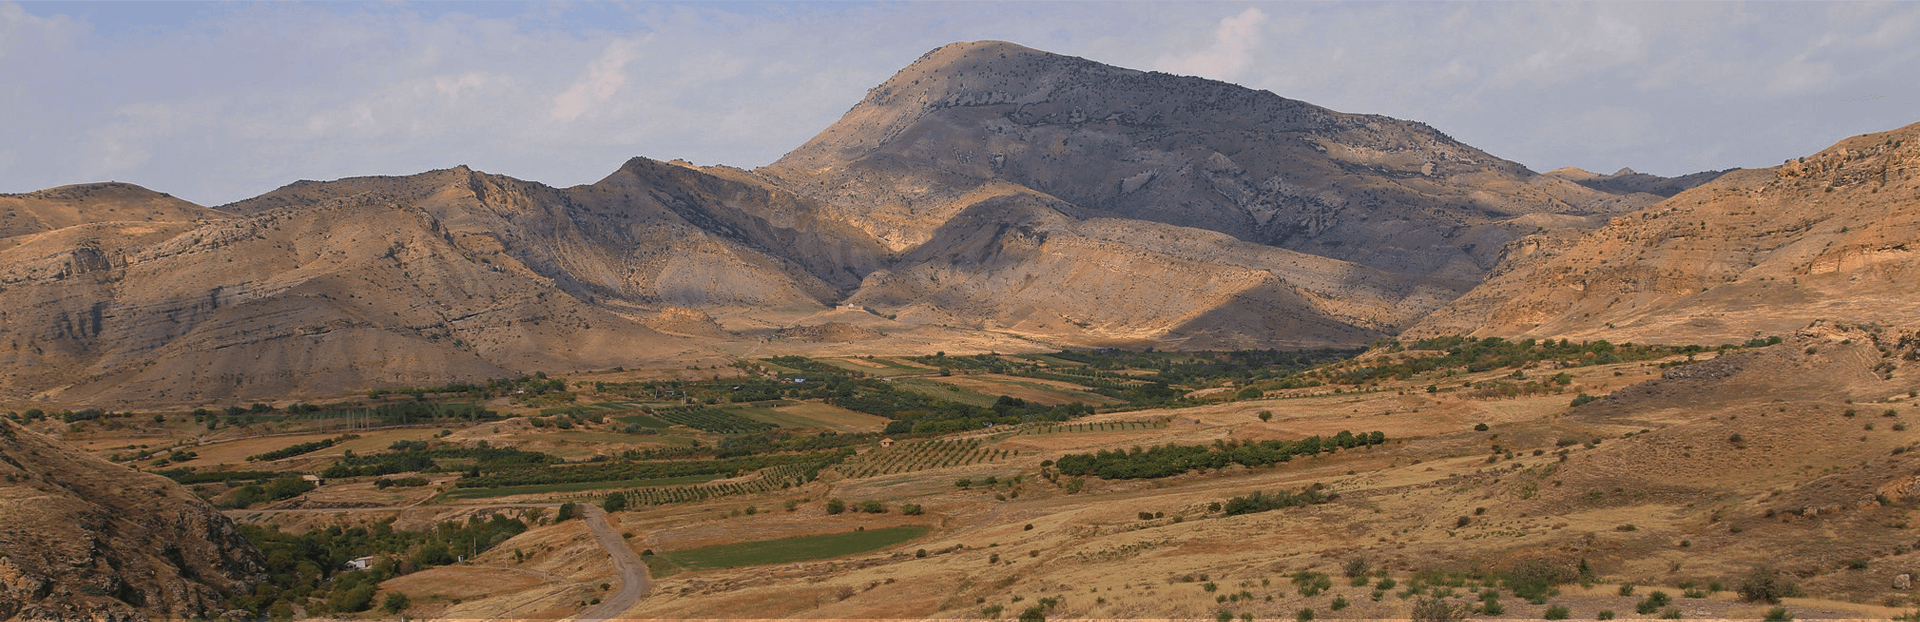 Vayots Dzor Wine Route - Հայաստանի գինու ժառանգությունը